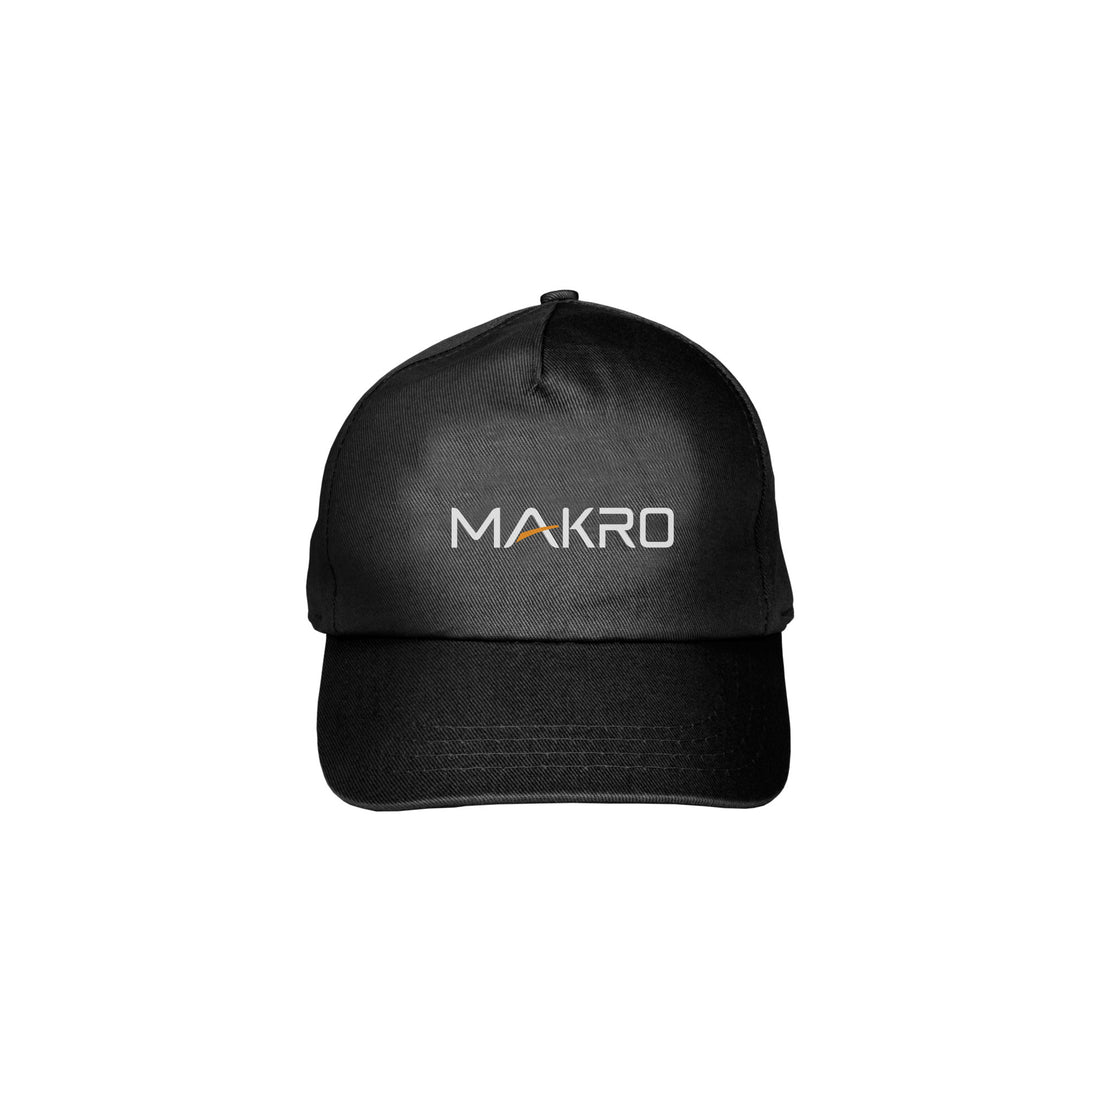 Makro Ball Cap with Official Makro Logo